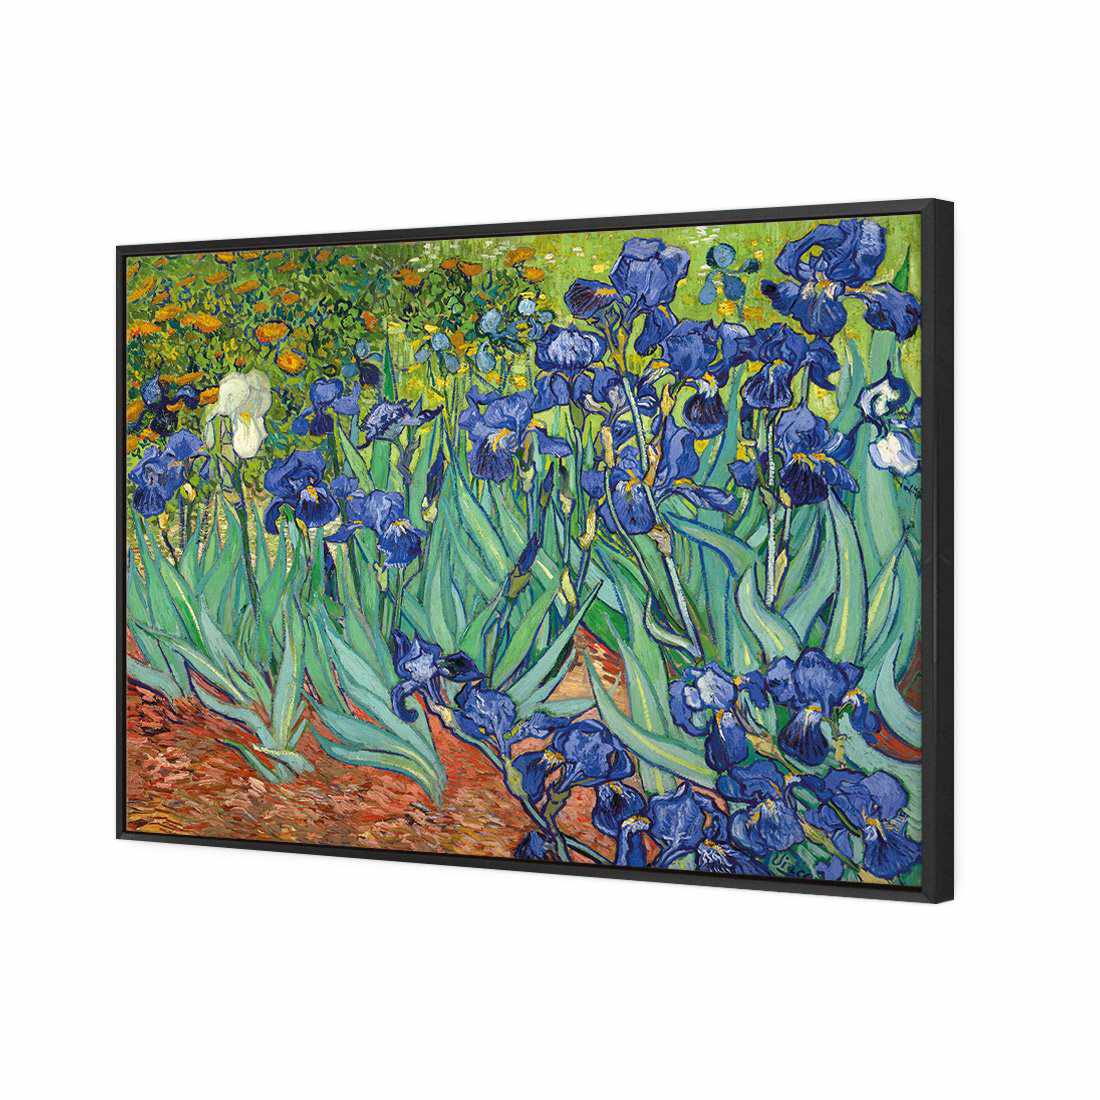 Irises 2 - Van Gogh Canvas Art-Canvas-Wall Art Designs-45x30cm-Canvas - Black Frame-Wall Art Designs